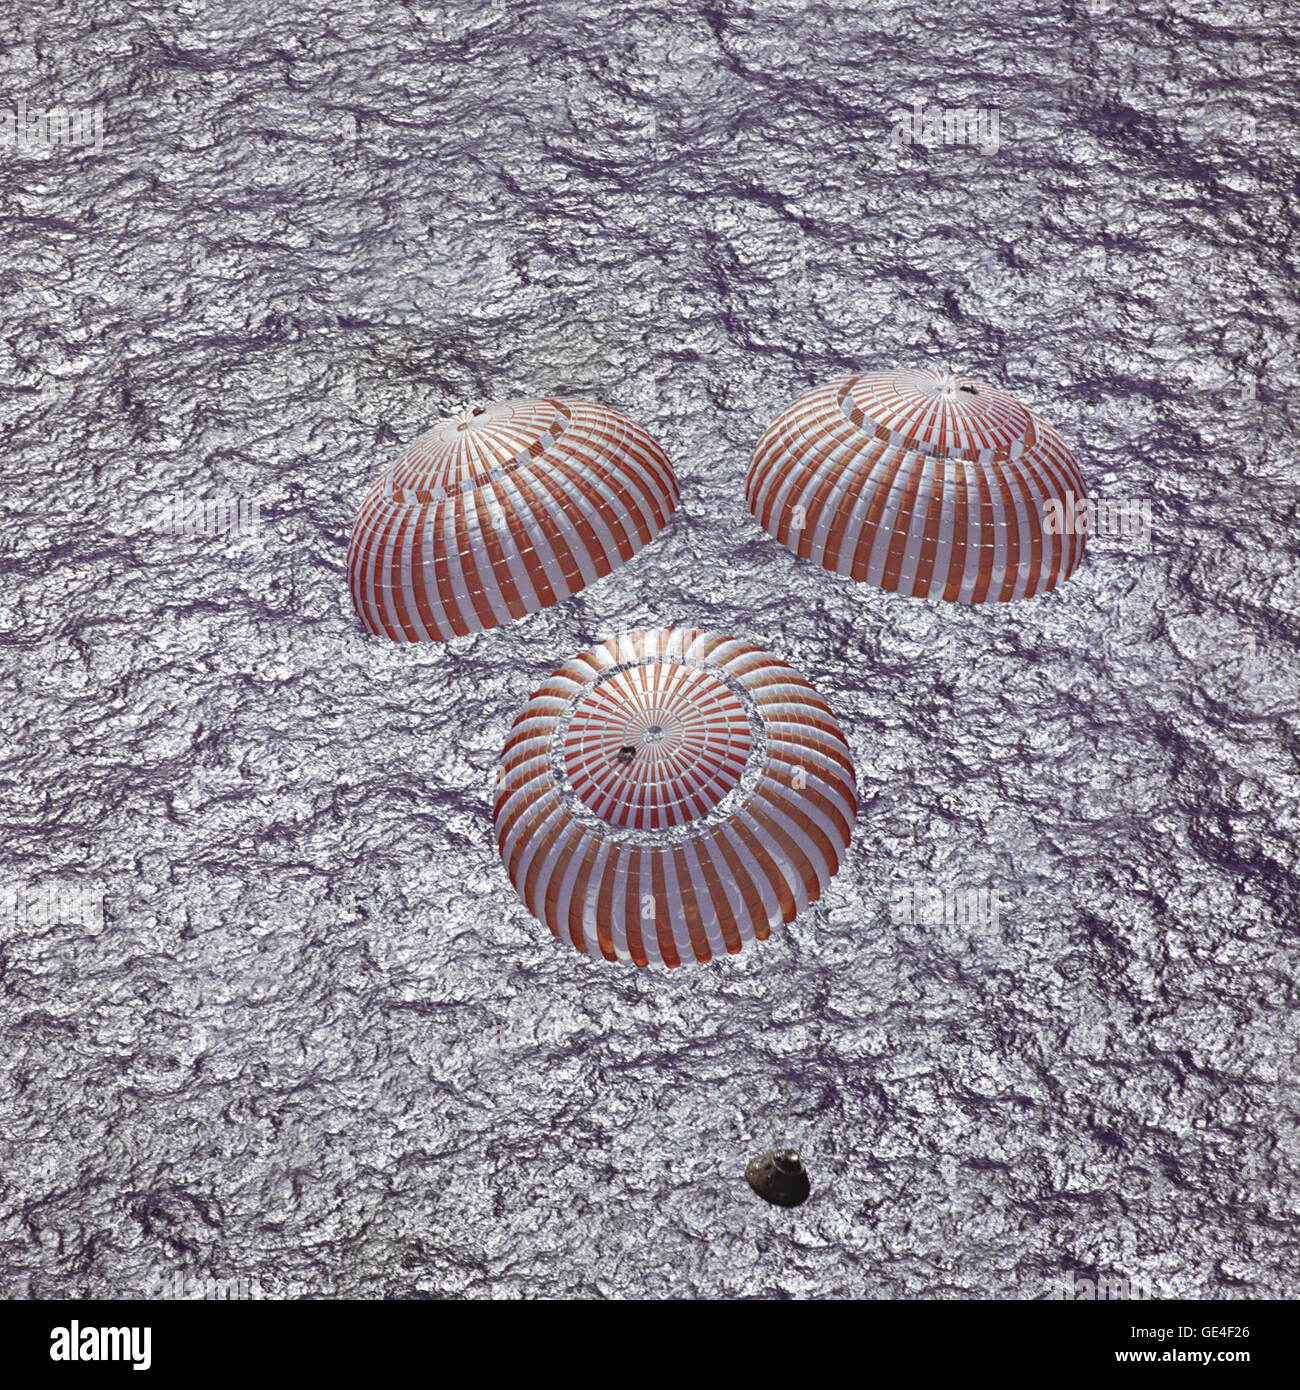 Le module de commande Apollo 16 avec les astronautes, John W. Young, Thomas K. Mattingly II et Charles M. Duc Jr. à bord, s'approche de splashdown dans l'océan Pacifique central pour mener à bien une mission d'atterrissage lunaire. Cette photo a été prise au-dessus d'un appareil de récupération de secondes avant de l'engin spatial de sauter dans l'eau. Le splashdown est produite à 290:37:06 sol temps écoulé à 1:45:06 a.m. (CST), le 27 avril 1972, à la position de 00:43,2 degrés de latitude sud et 156:11,4 degrés de longitude ouest, un point situé à environ 215 kilomètres au sud-est de l'île Christmas. Image #  : S72-36287 Banque D'Images